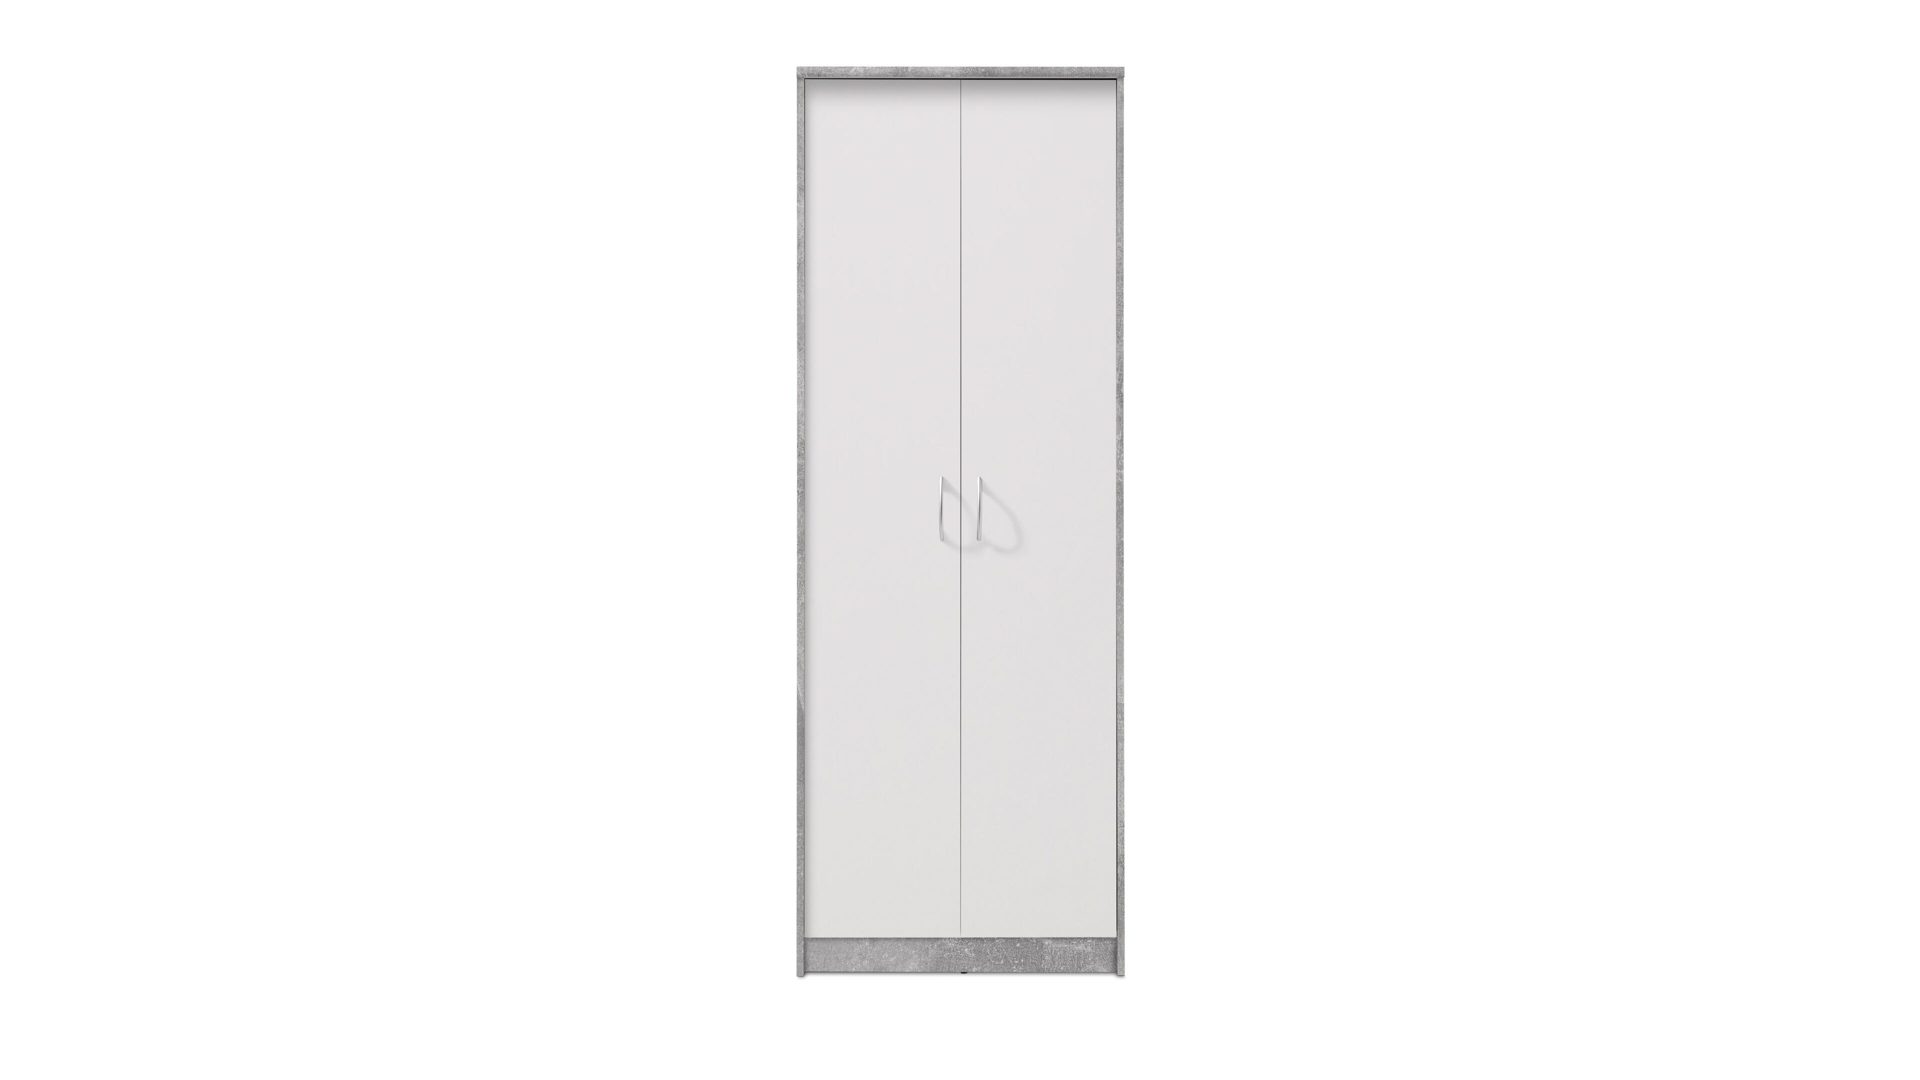 Aktenschrank Bega consult aus Holz in Grau Aktenschrank weiße & betonfarbene Kunststoffoberflächen – zwei Türen, Höhe ca. 198 cm